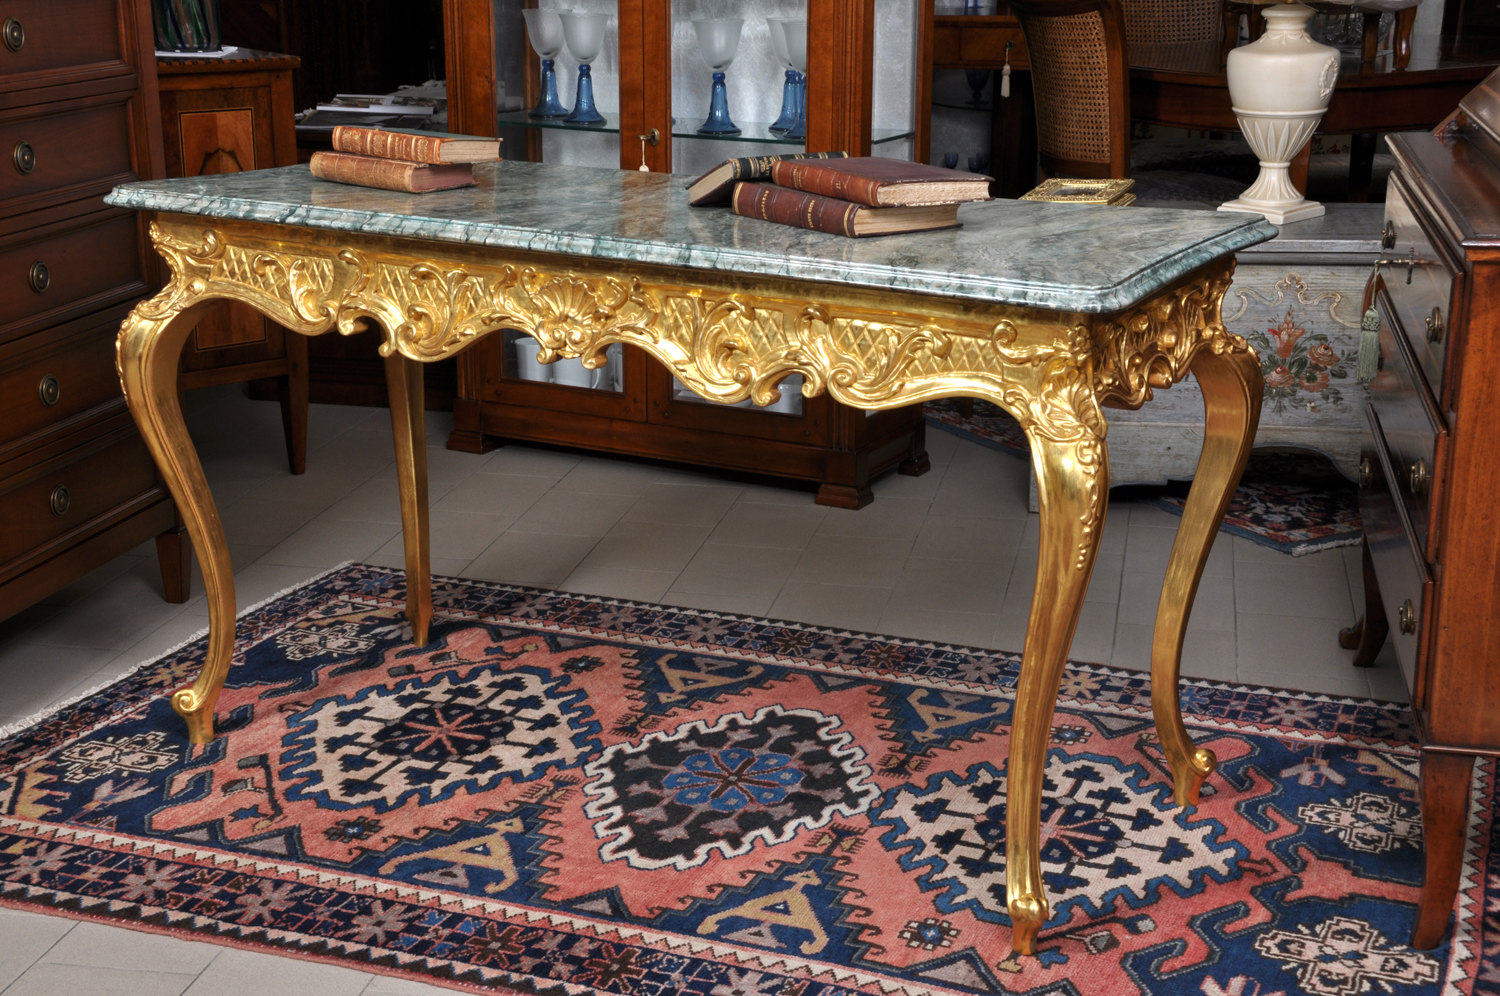 lussuoso tavolo consolle veneziano intagliato a mano in stile 1700, piano in marmo laccato verde alpi, laccatura in oro zecchino del fusto